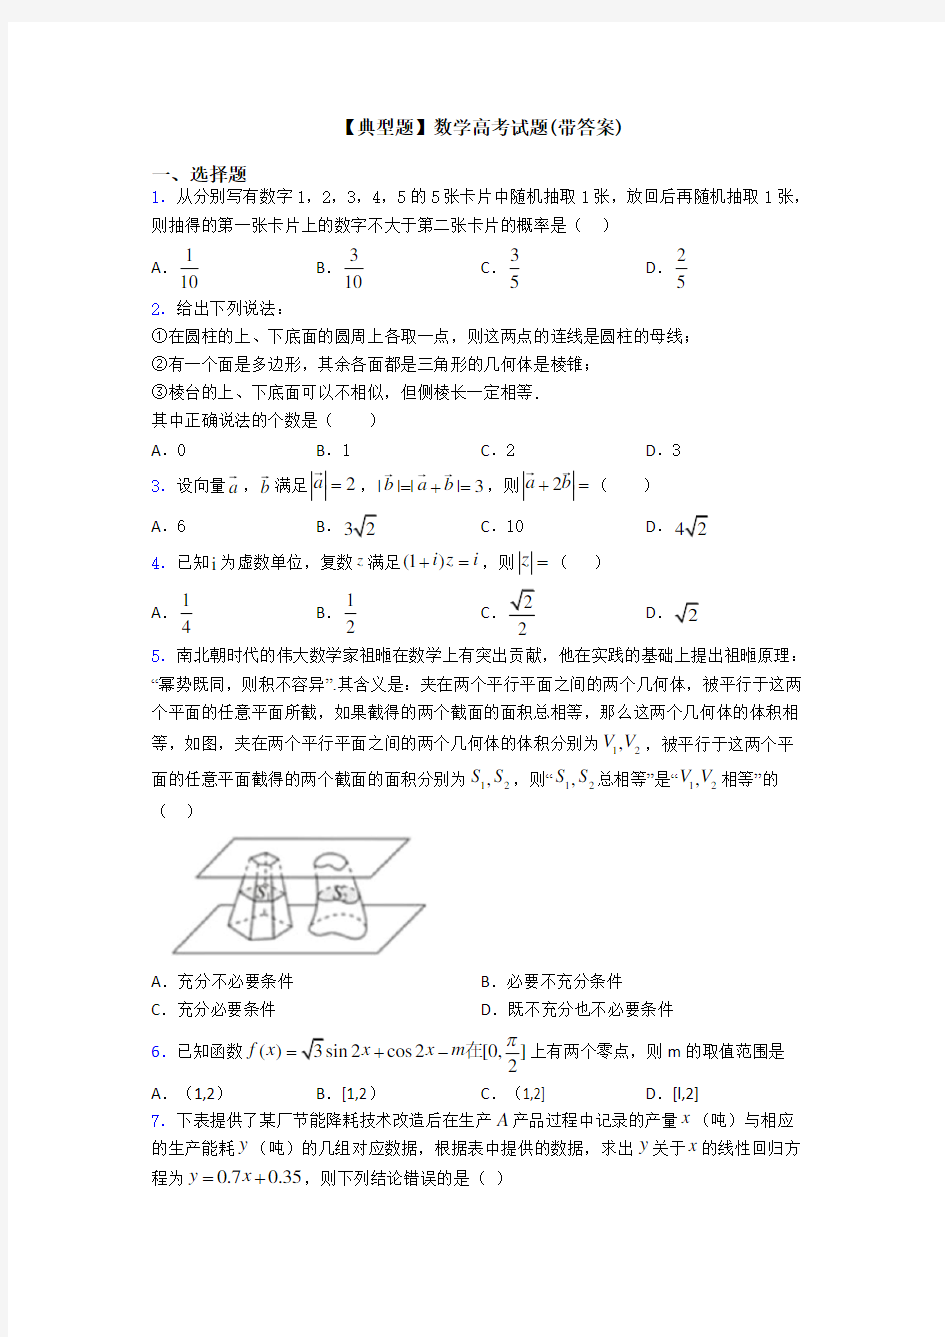 【典型题】数学高考试题(带答案)